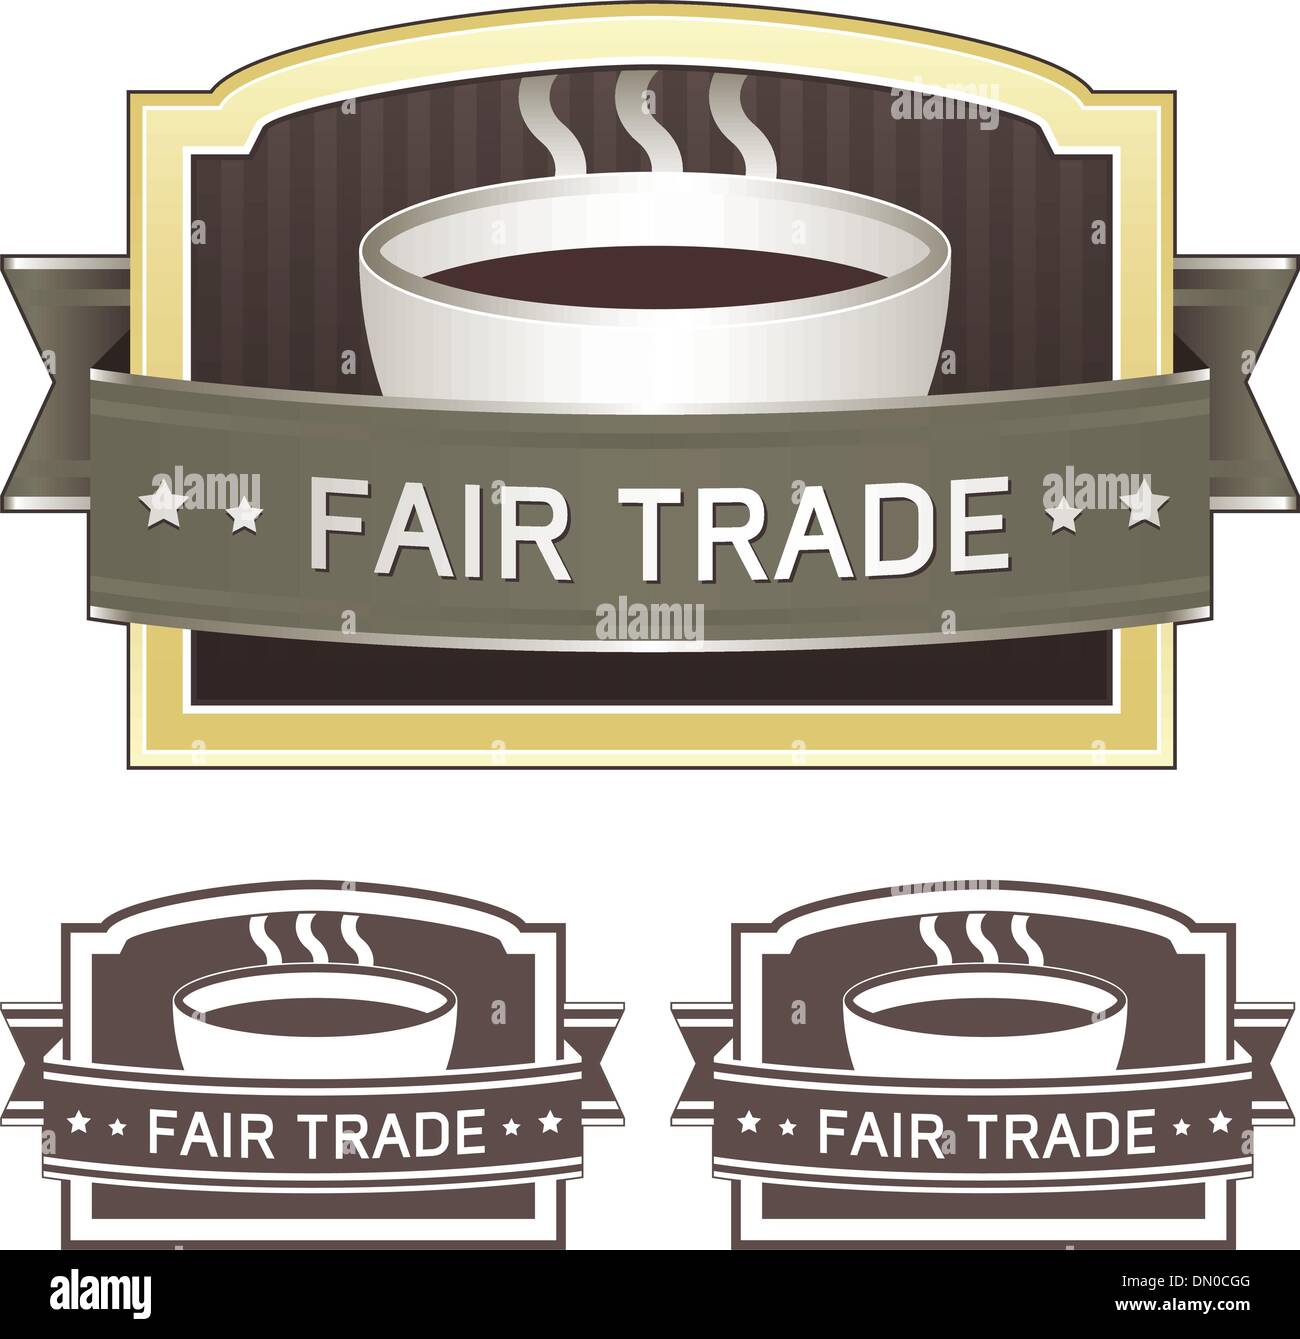 Fair trade coffee label Stock Vector